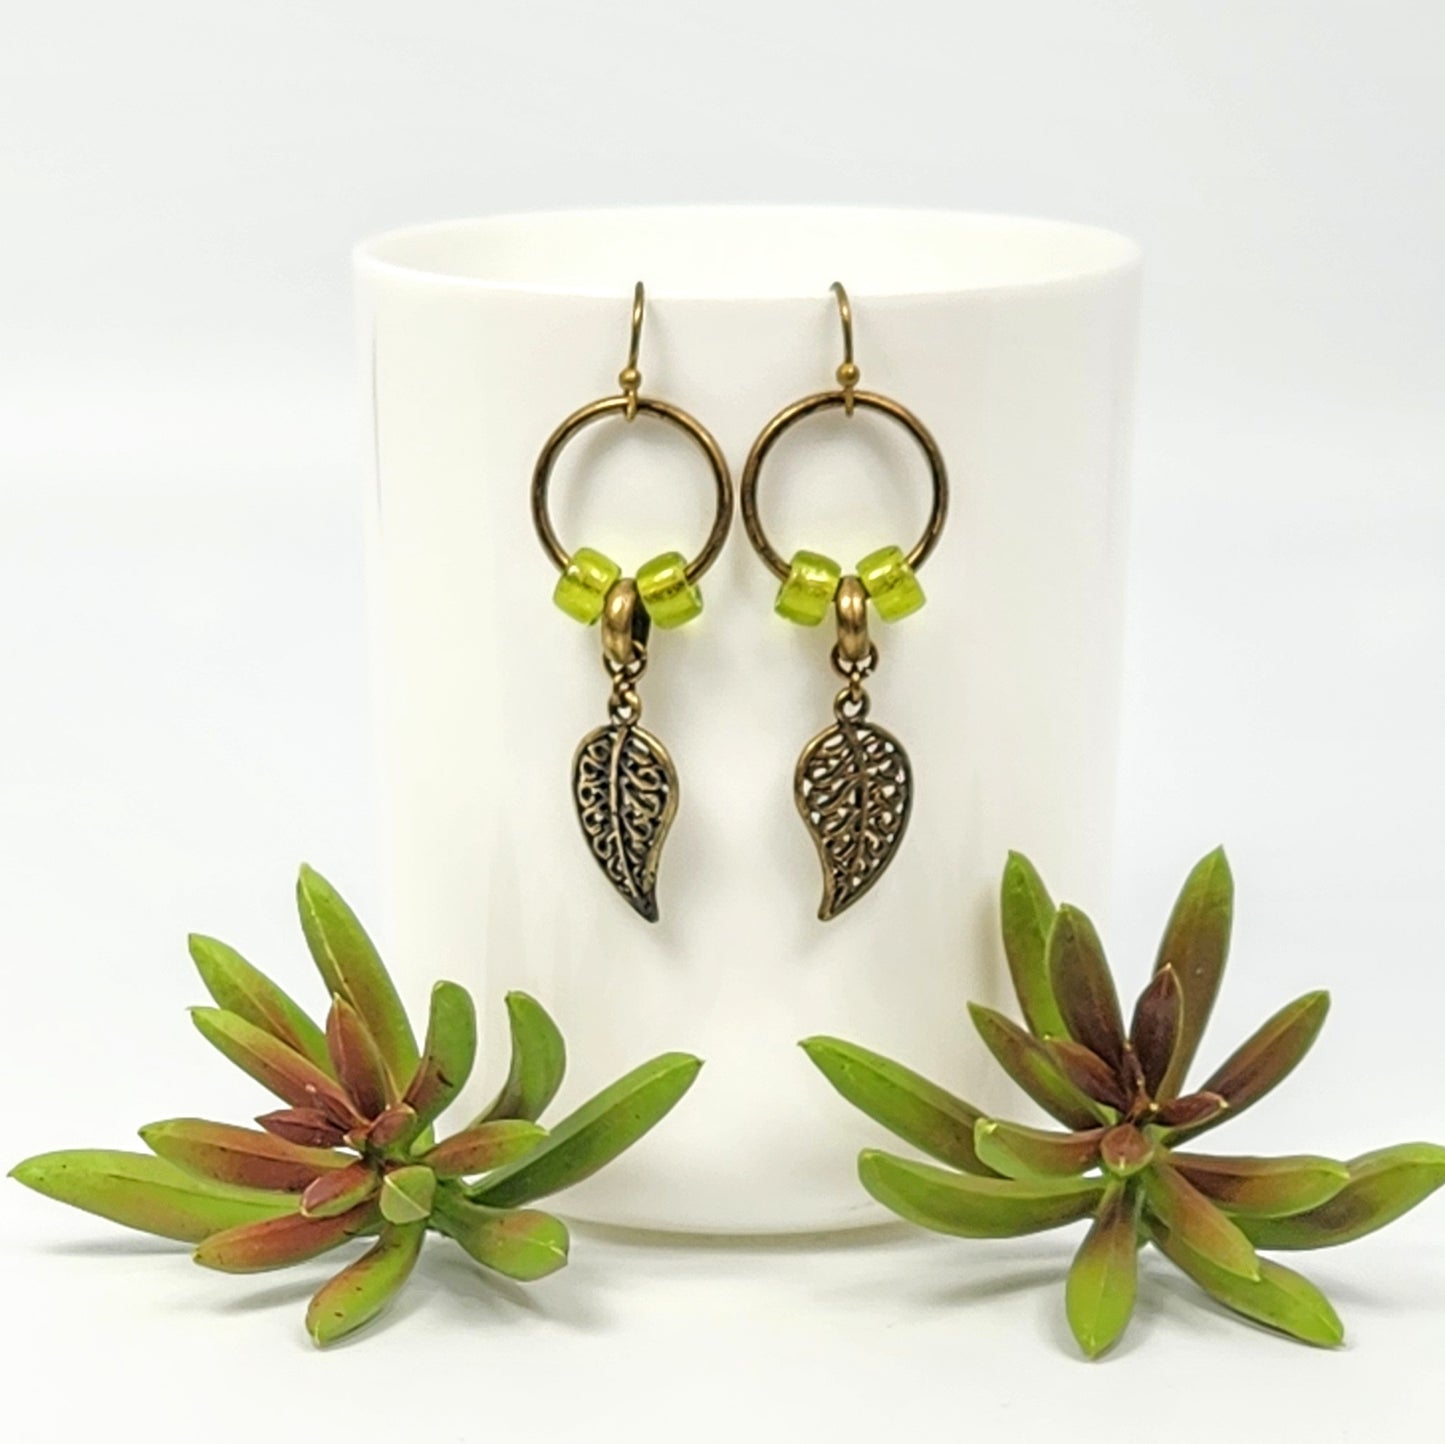 Leaves + Czech Glass Earrings